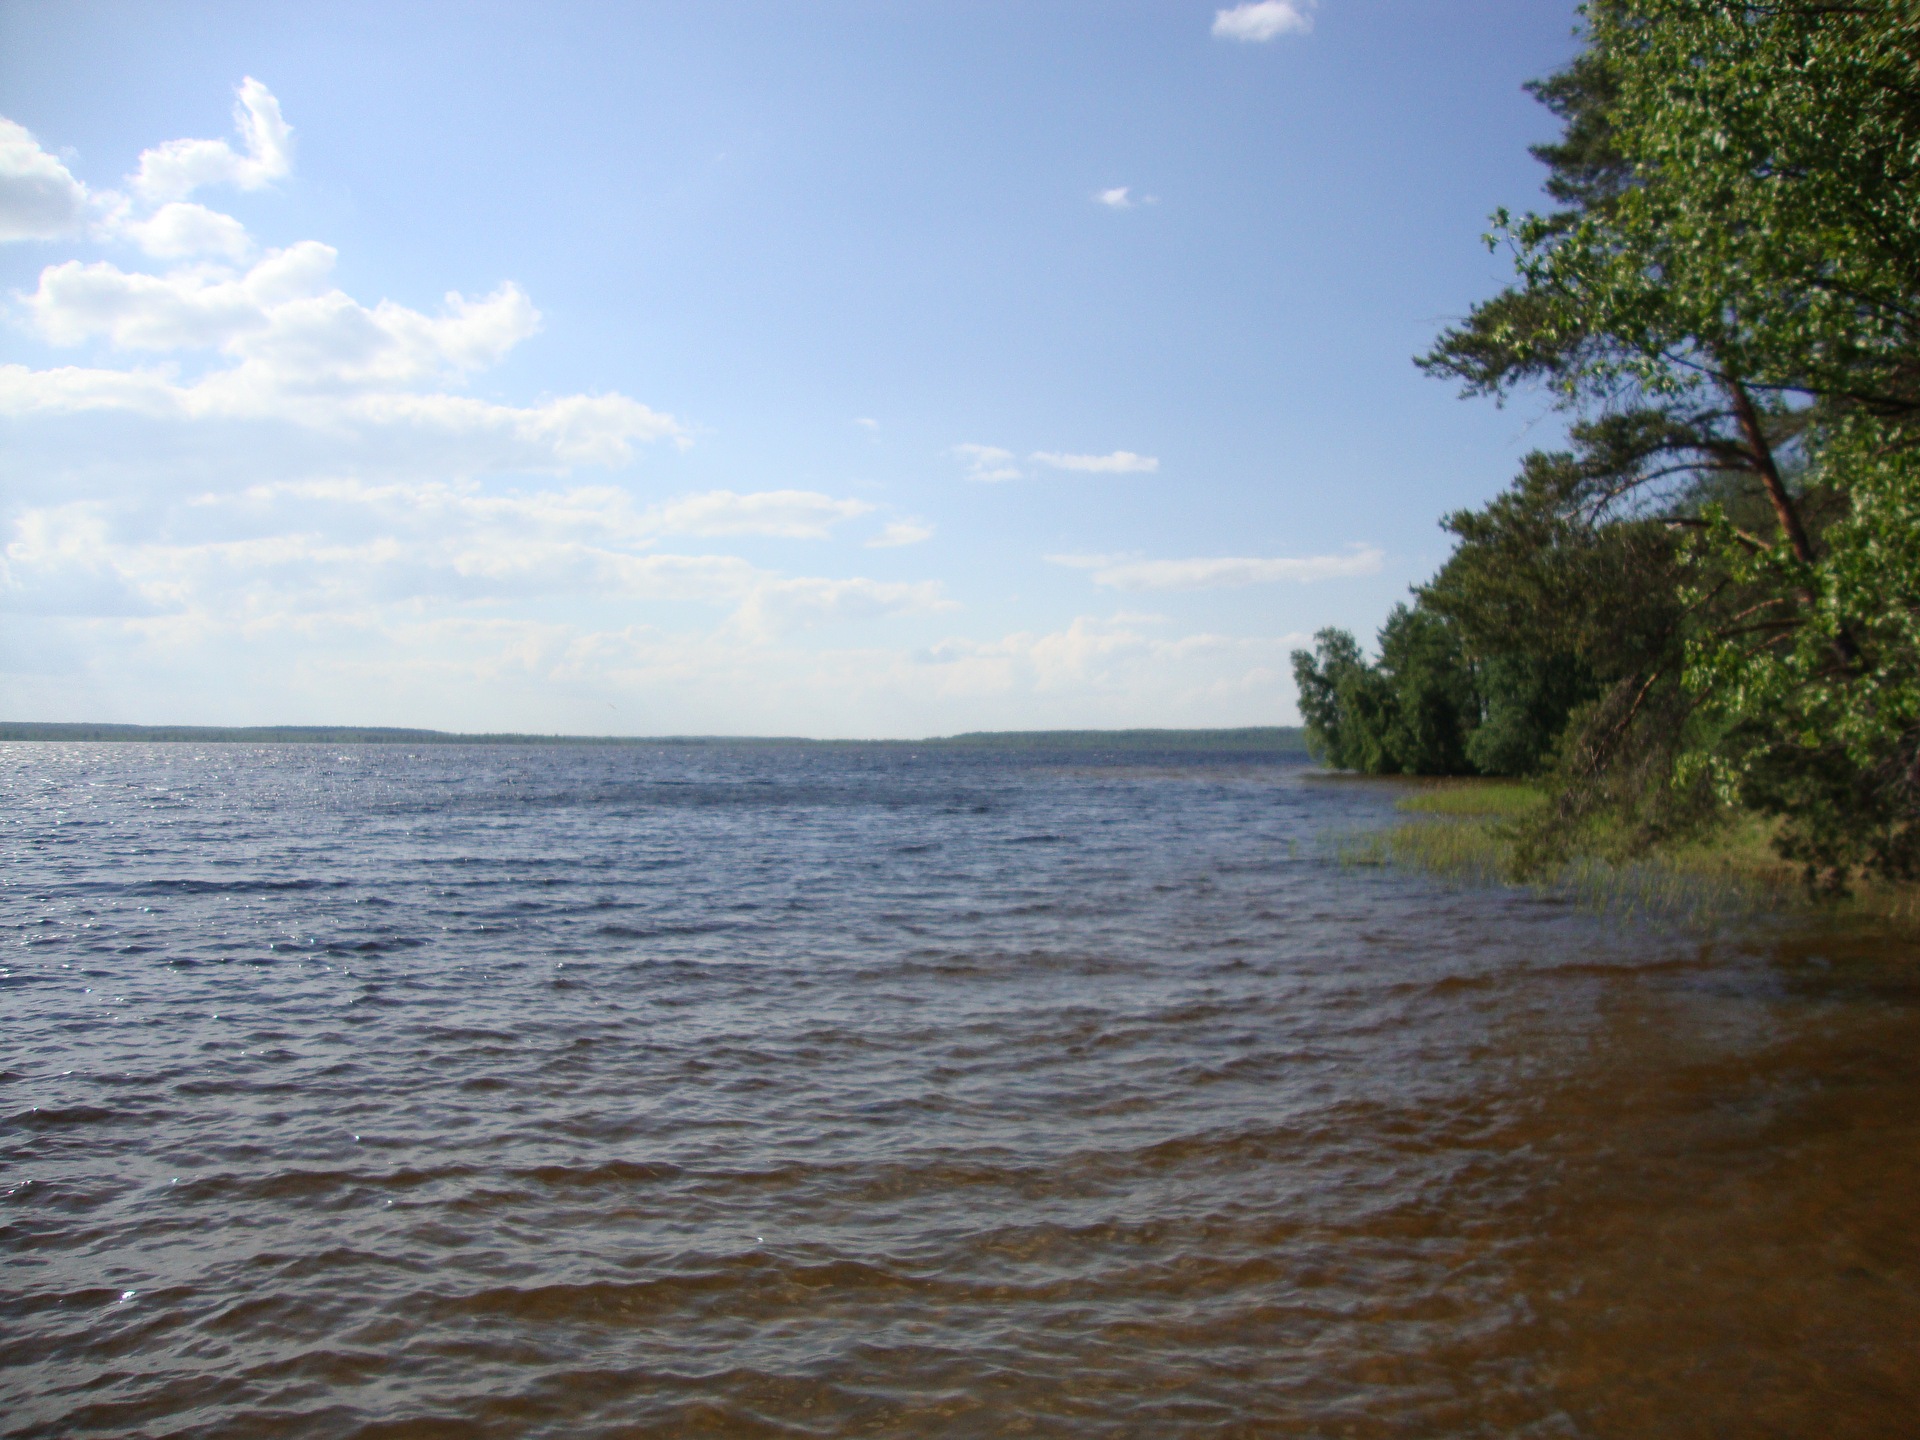 Рубское озеро ивановская